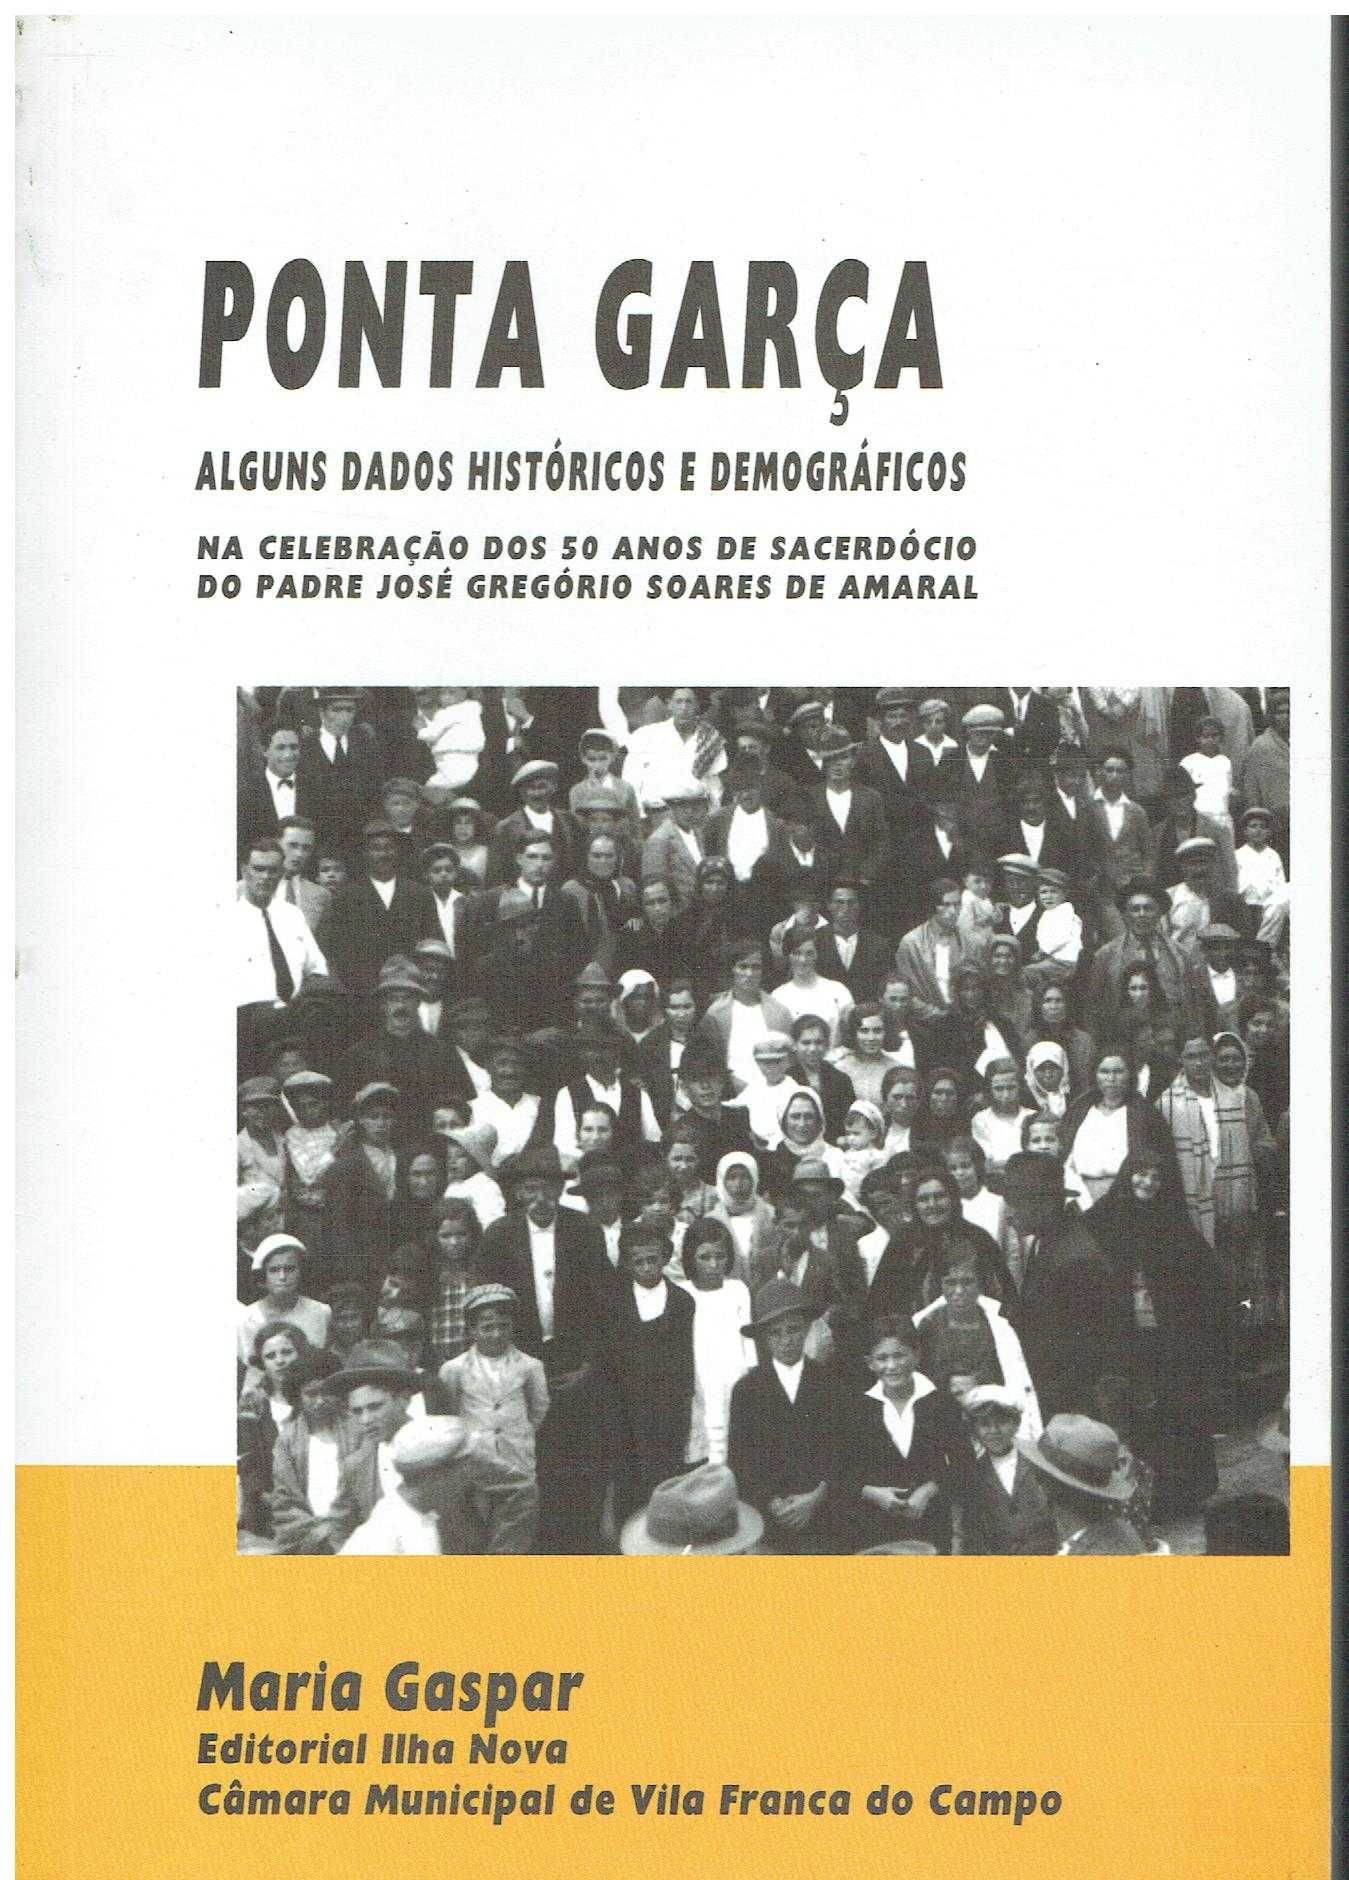 6976
	
Ponta Garça : alguns dados históricos e demográficos